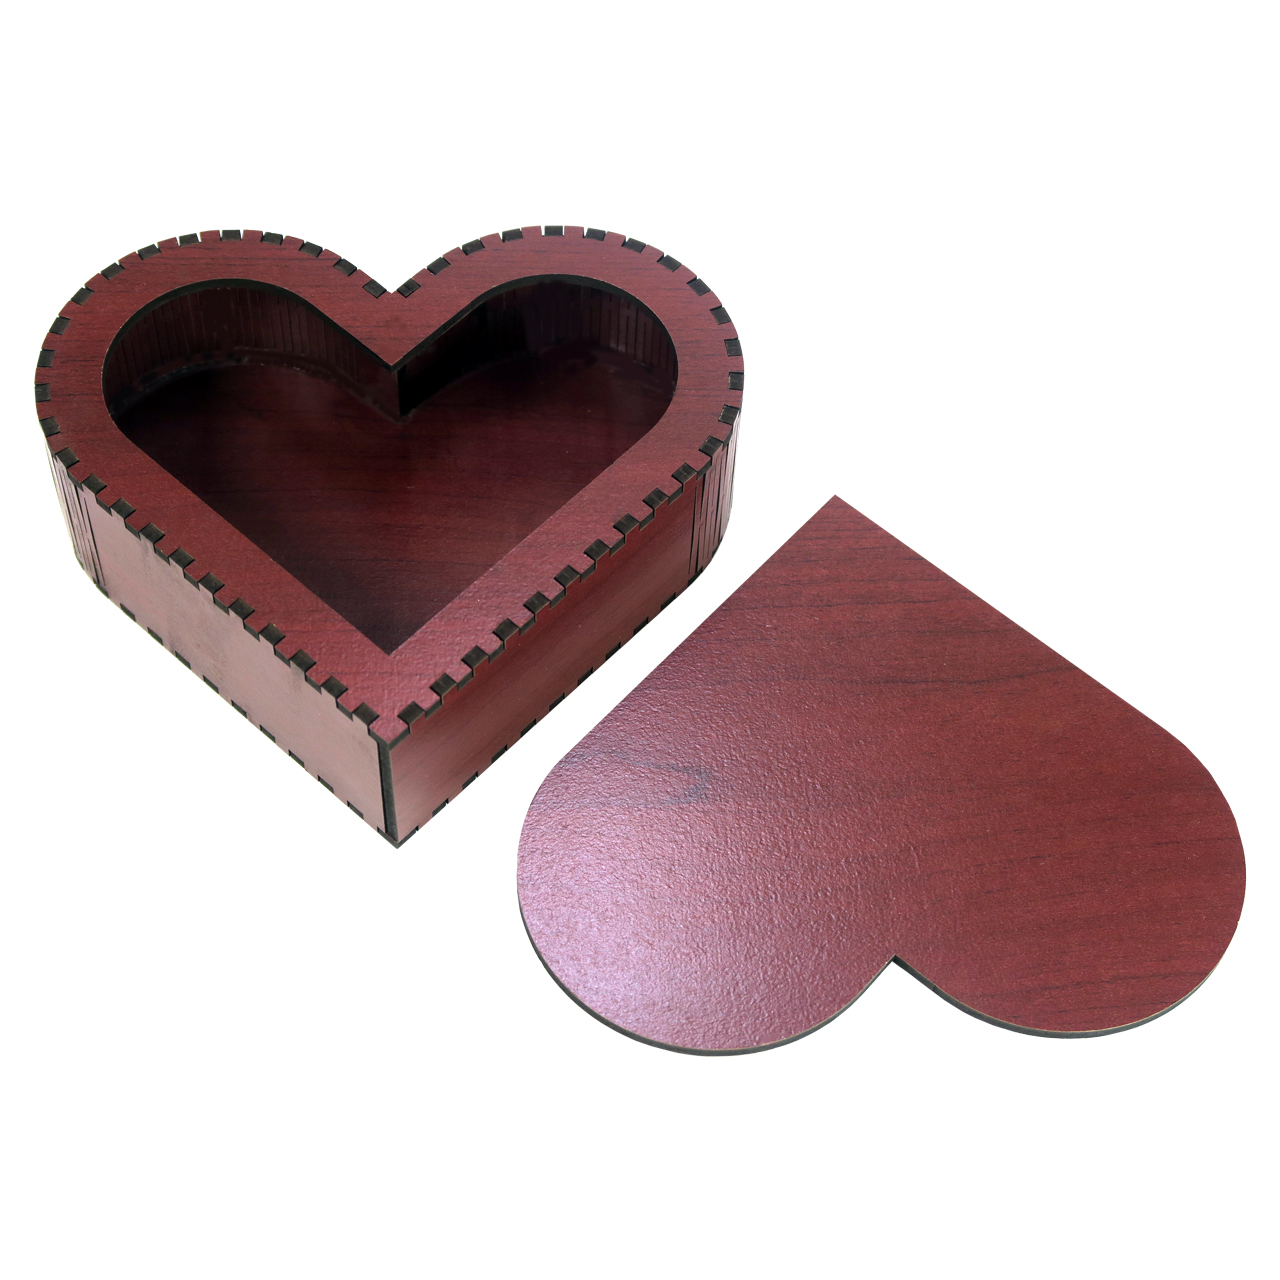 جعبه هدیه چوبی مرکوری شاپ مدل قلب کد 051003 سایز 3 × 6 × 6